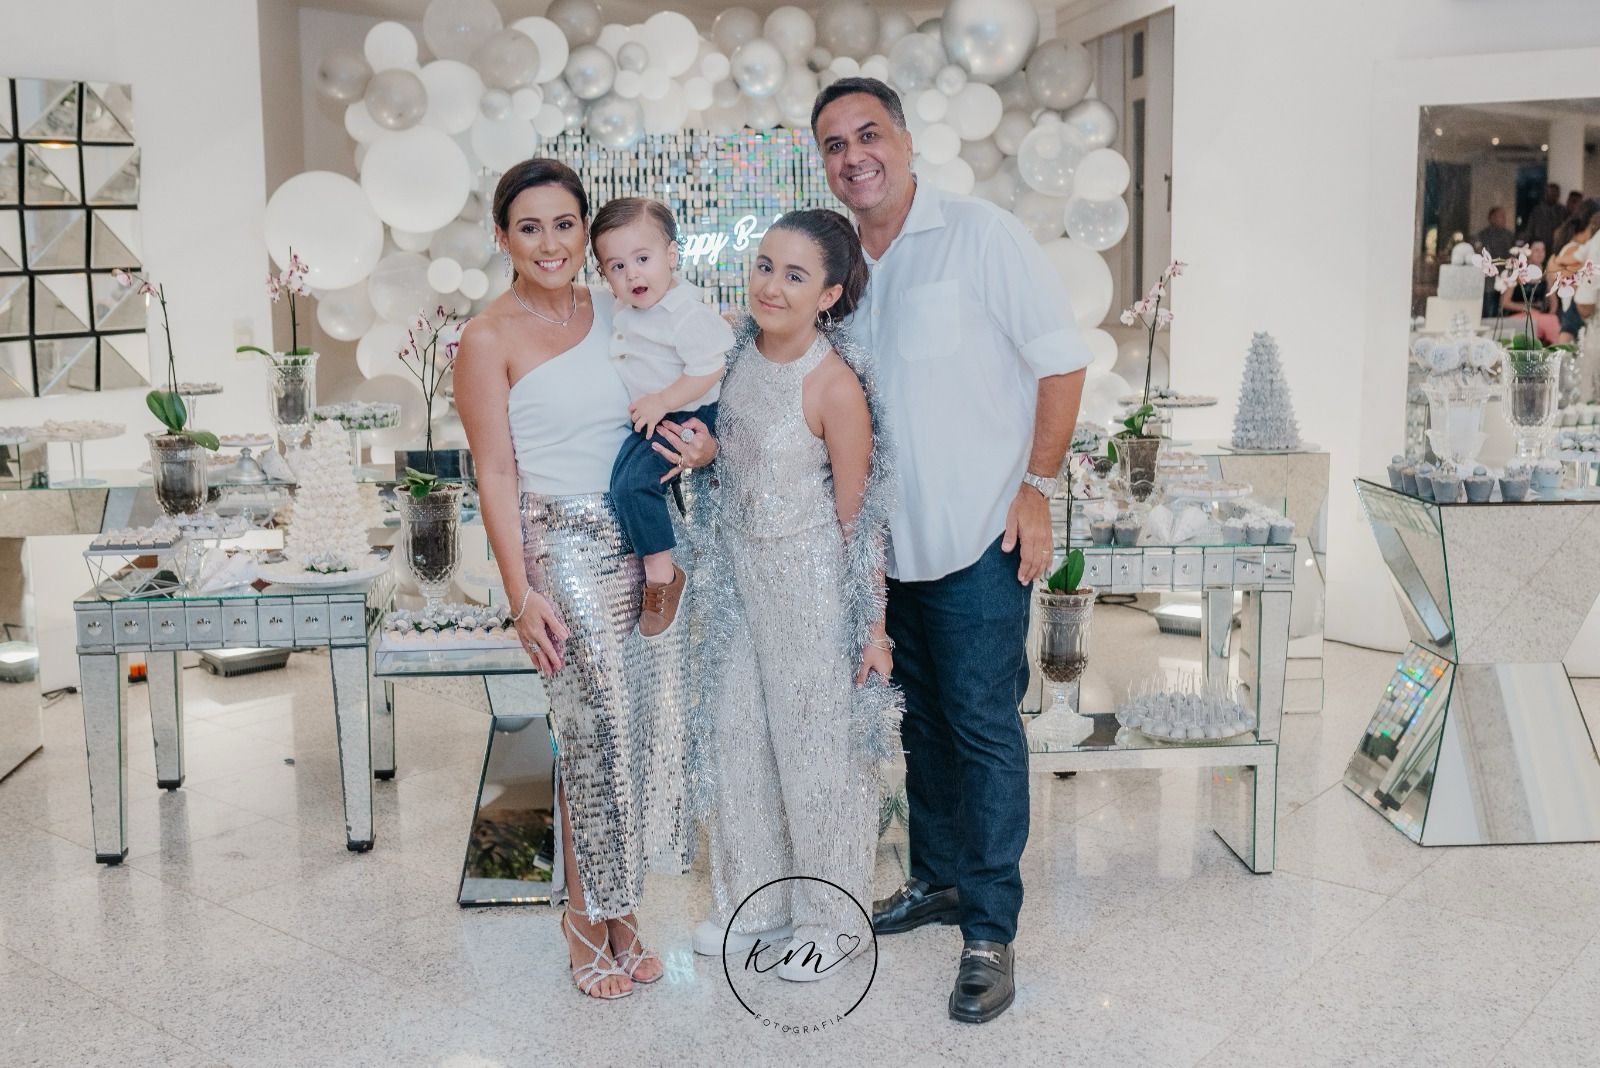 Letícia Loureiro comemora aniversário com bem-cuidada festa idealizada por seus pais Claudiana e Rodrigo Loureiro